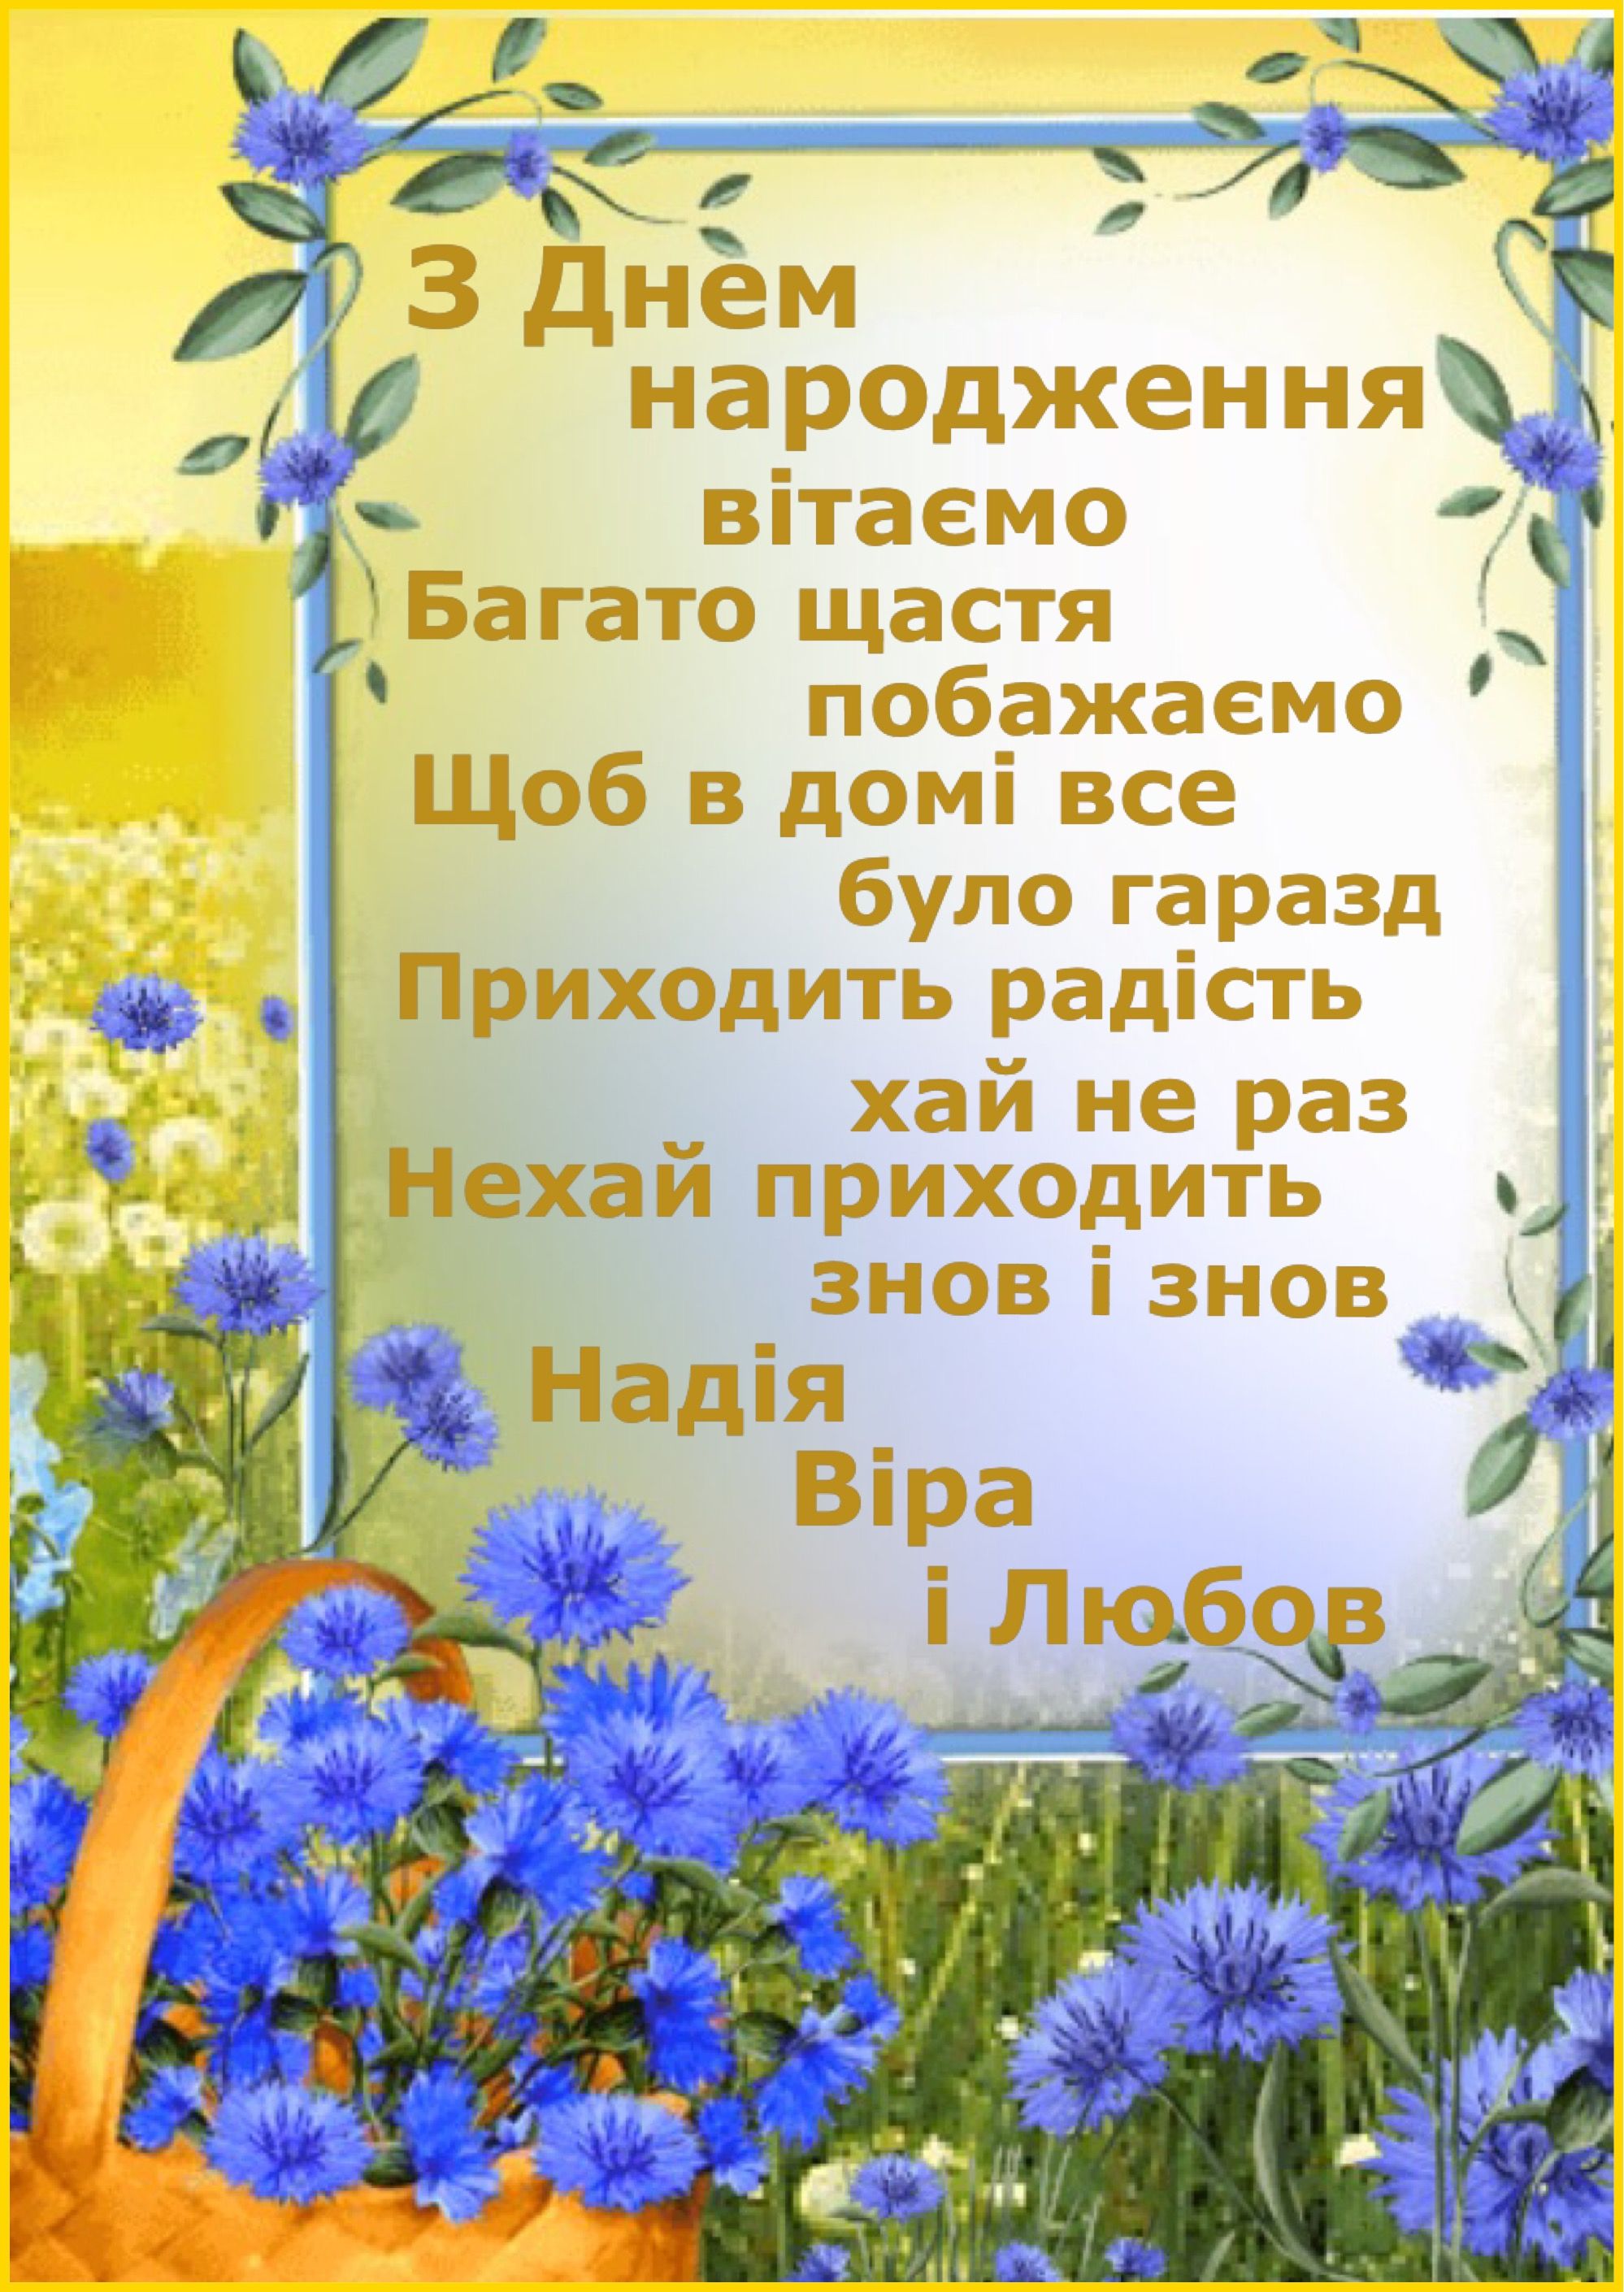 Привітання з днем народження брату українською мовою
